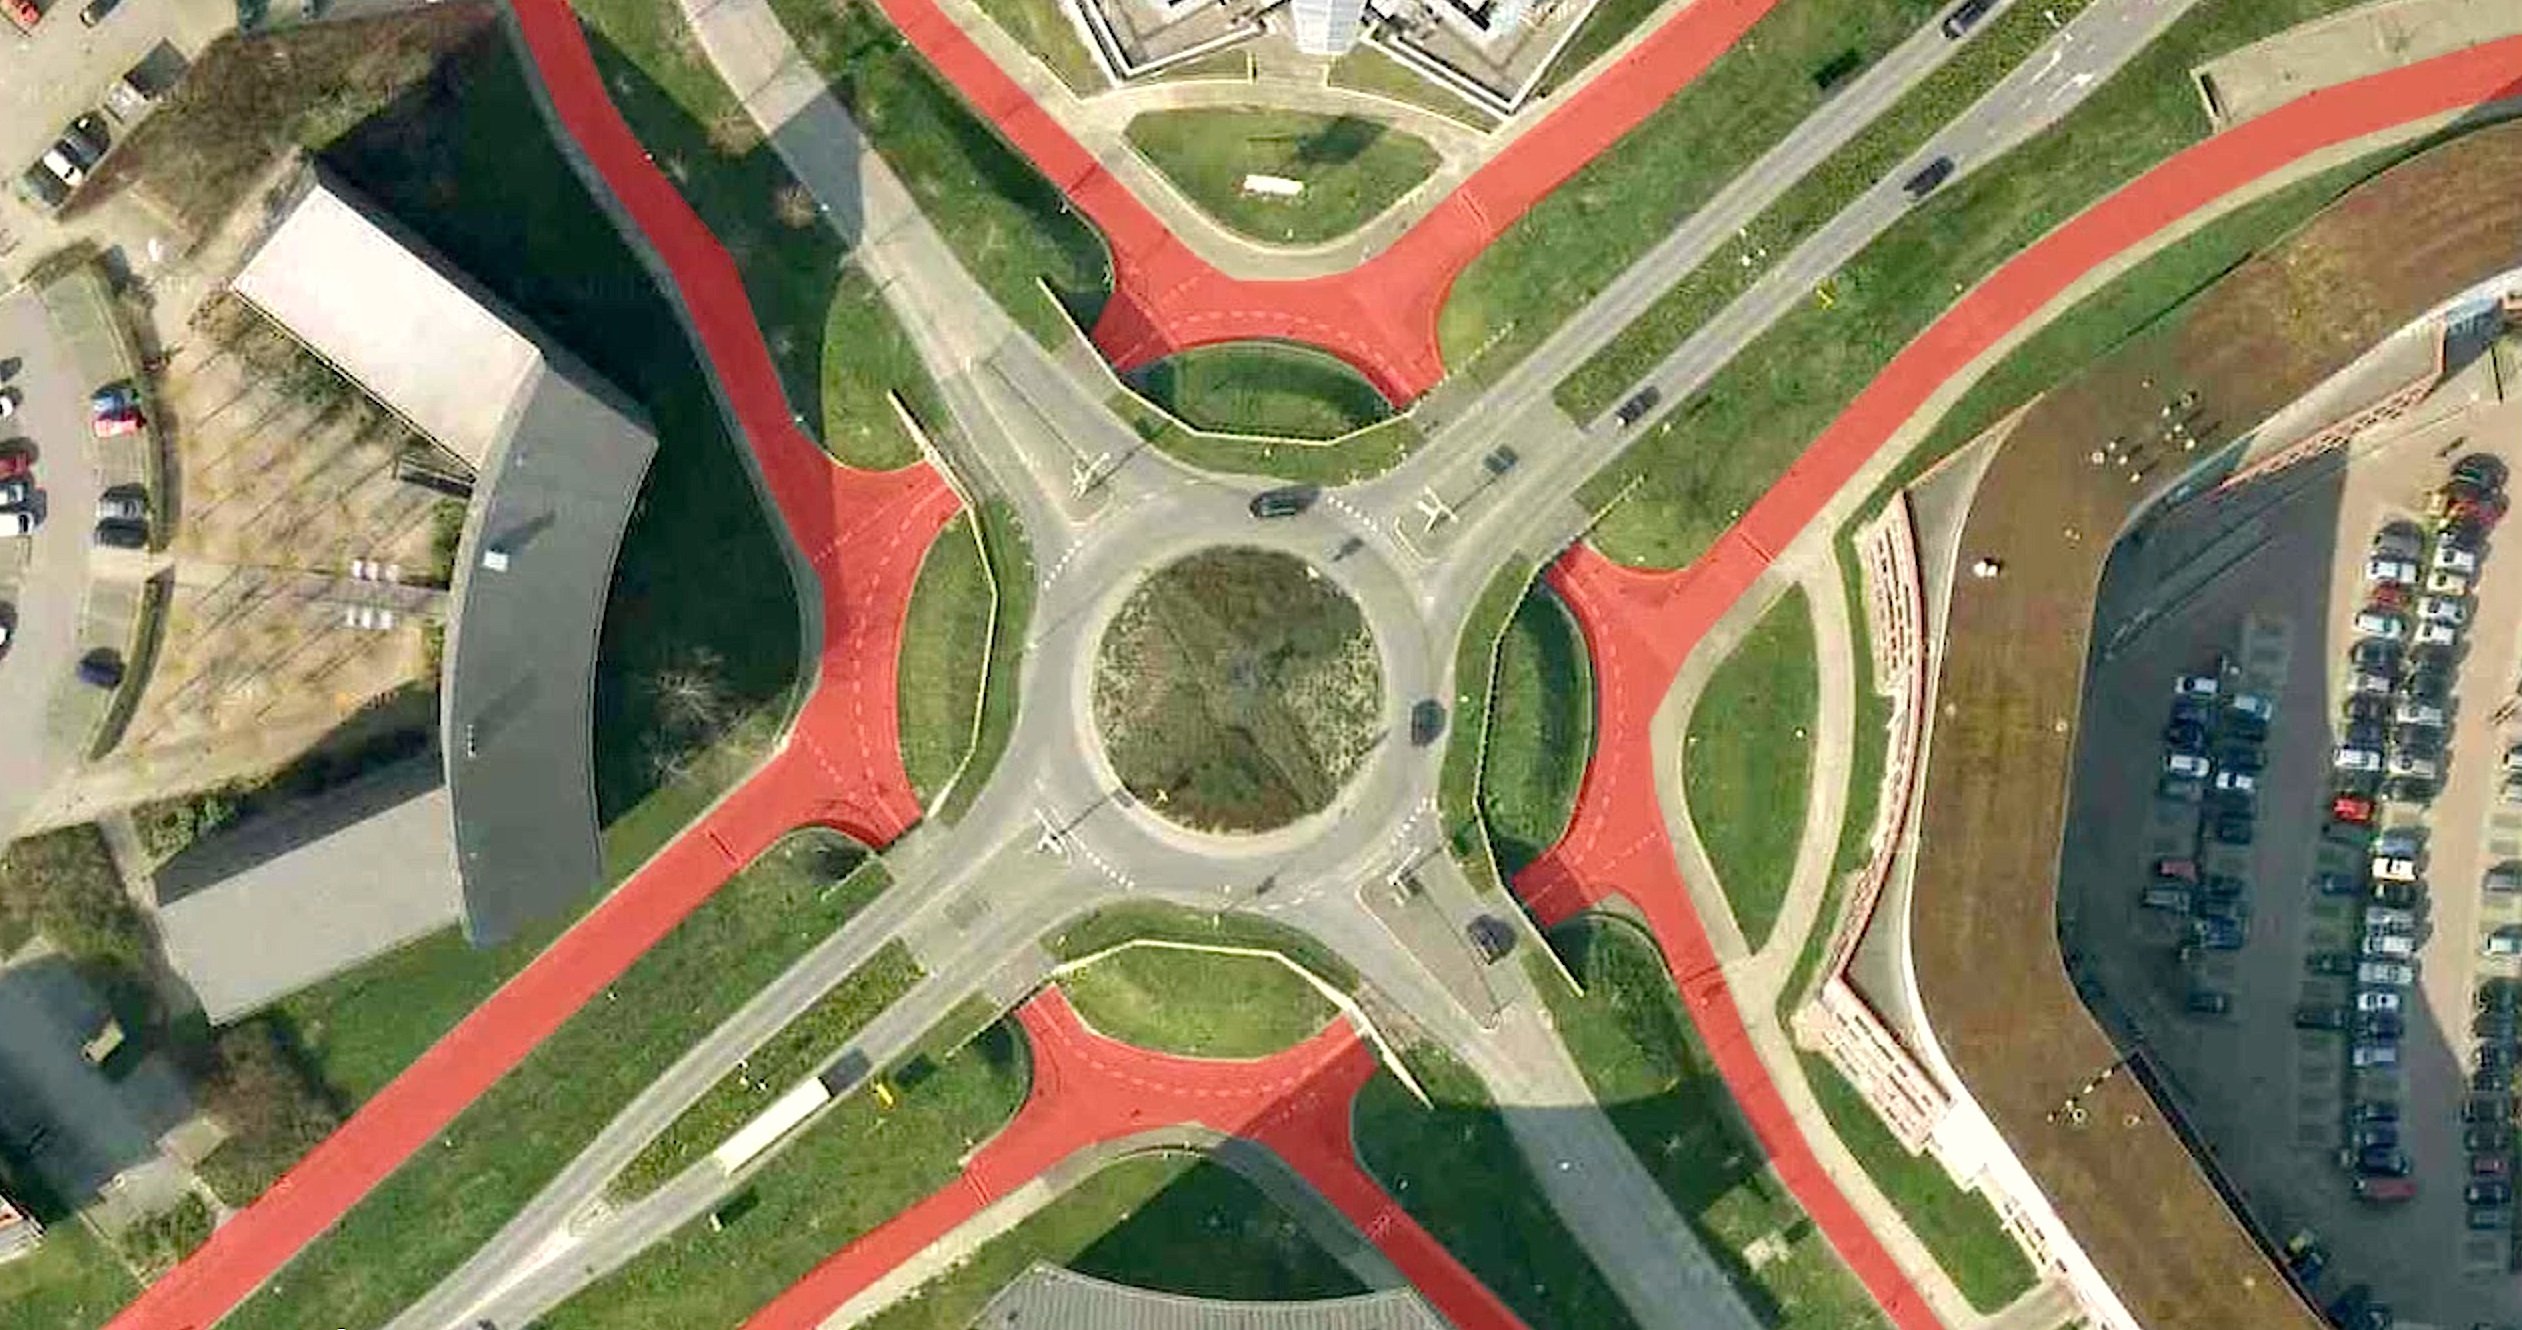 Kreuzungsfreier Kreisverkehr für Radfahrer im niederländischen Houten: Dort können Radfahrer auf den rot eingefärbten Flächen ohne anzuhalten eine wichtige Autokreuzung passieren. Und damit es der Radverkehr ganz einfach hat, ist der Autokreisel (grau) erhöht angelegt. Dadurch müssen die Radfahrer nur einen Meter nach unten fahren, um die Fahrbahnen zu unterqueren.